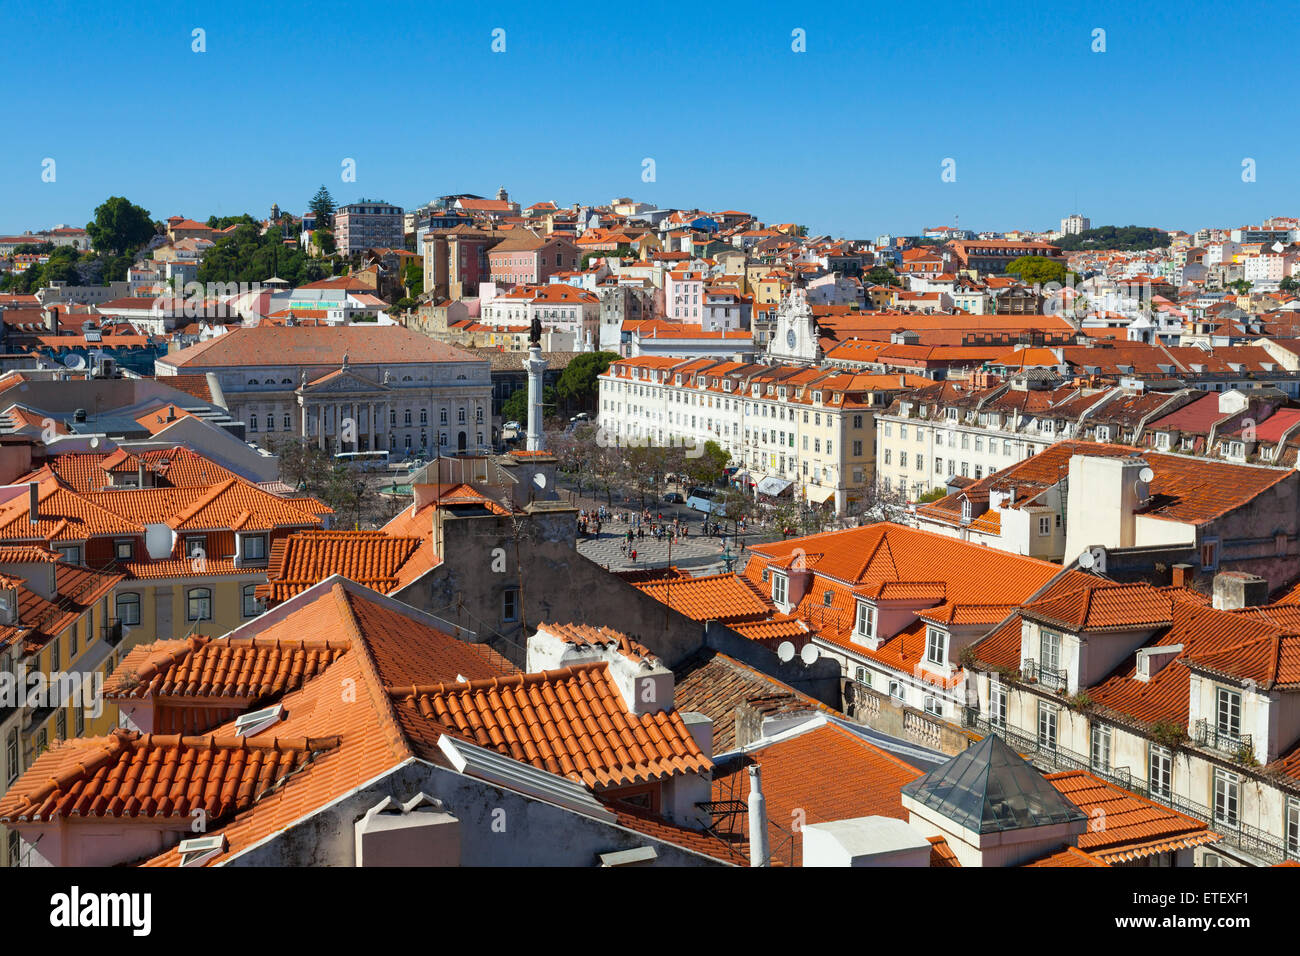 Ein Blick über die roten Dächer der Stadt Lissabon, die Hauptstadt von Portugal von den Höhen der Seilbahn Elevador de Santa Ju Stockfoto